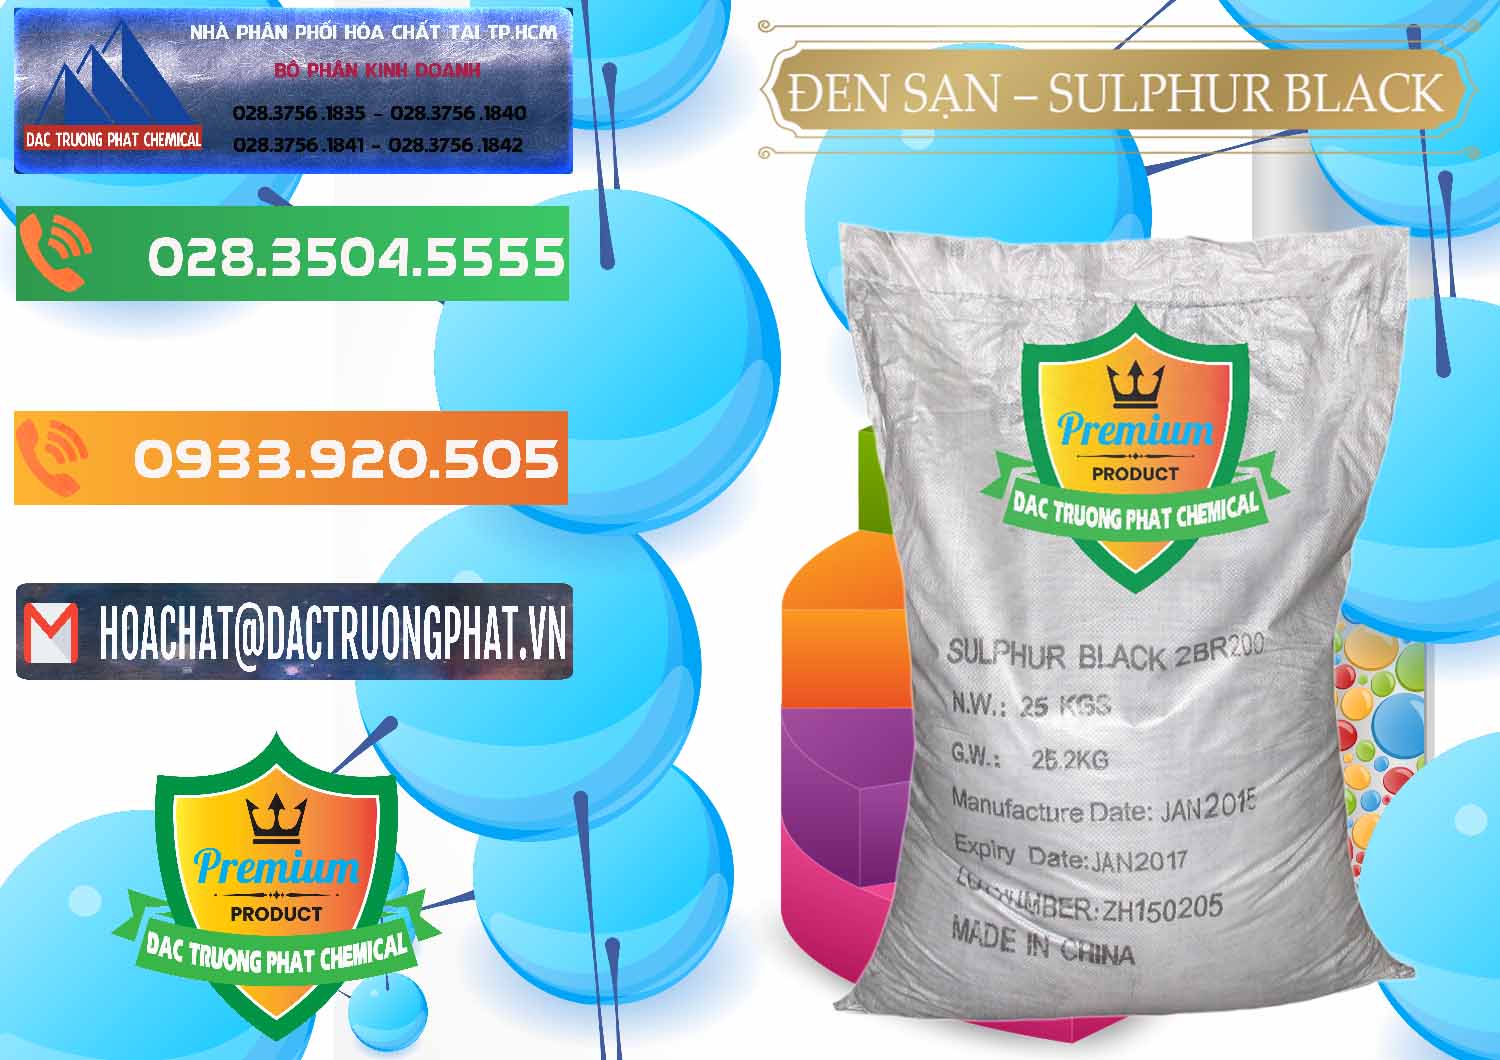 Cty chuyên bán & cung ứng Đen Sạn – Sulphur Black Trung Quốc China - 0062 - Cung ứng và phân phối hóa chất tại TP.HCM - hoachatxulynuoc.com.vn